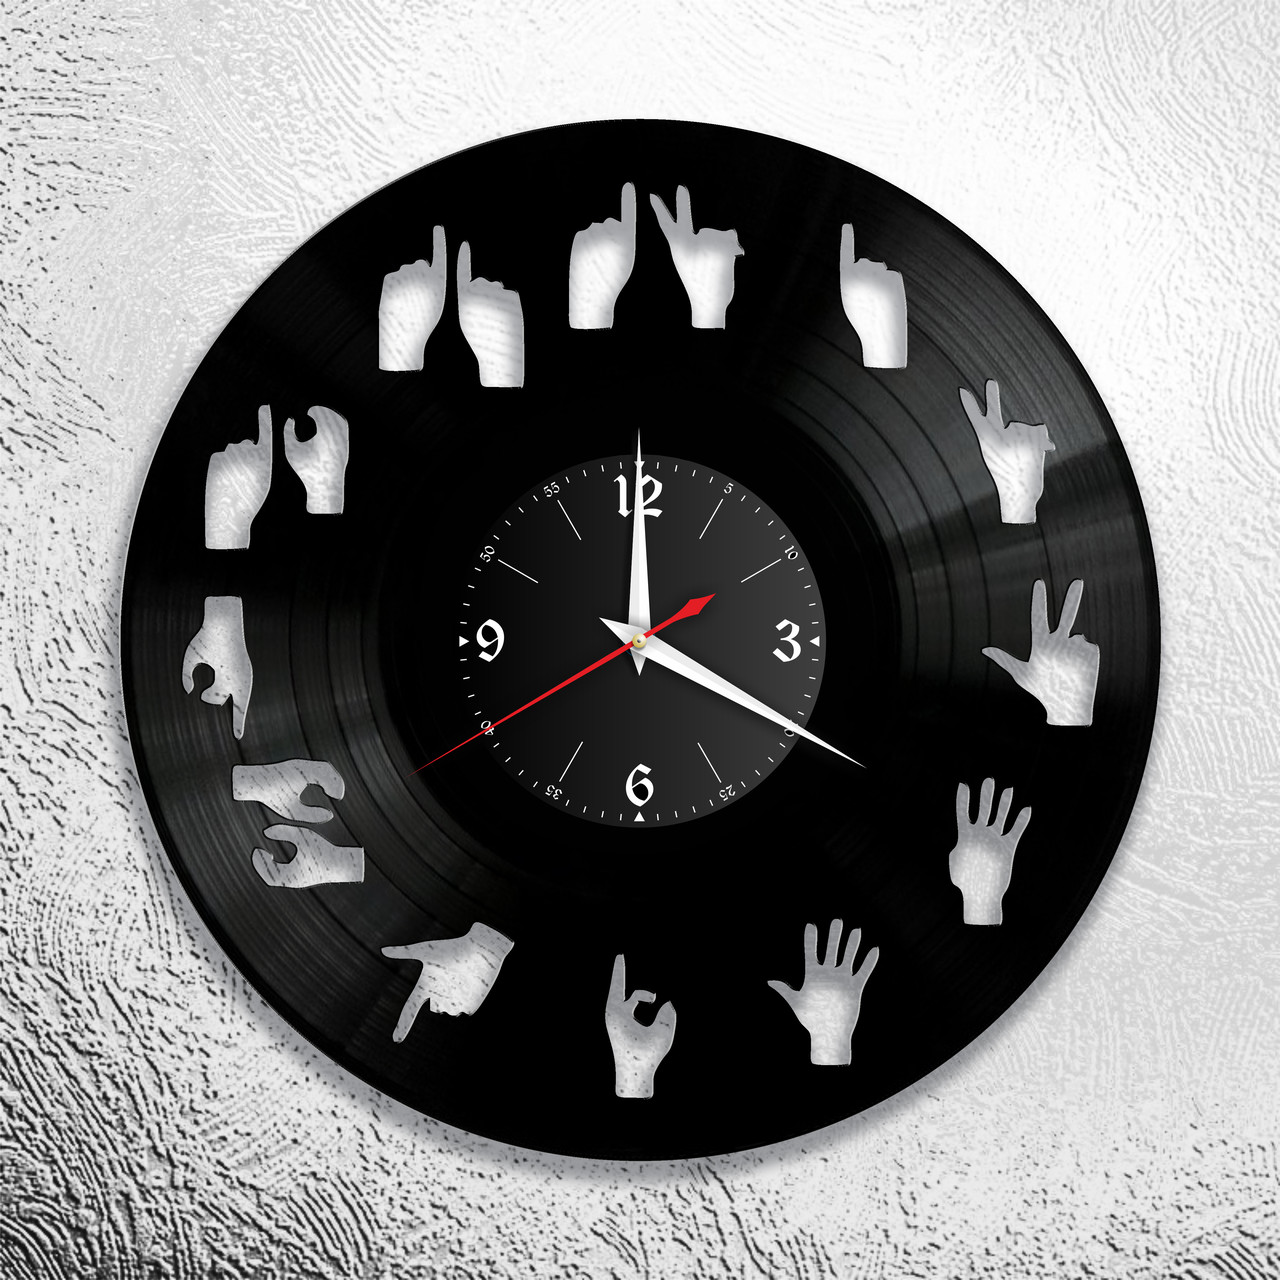 Оригинальные часы из виниловых пластинок "Цифры" Версия 11 (жесты), фото 1